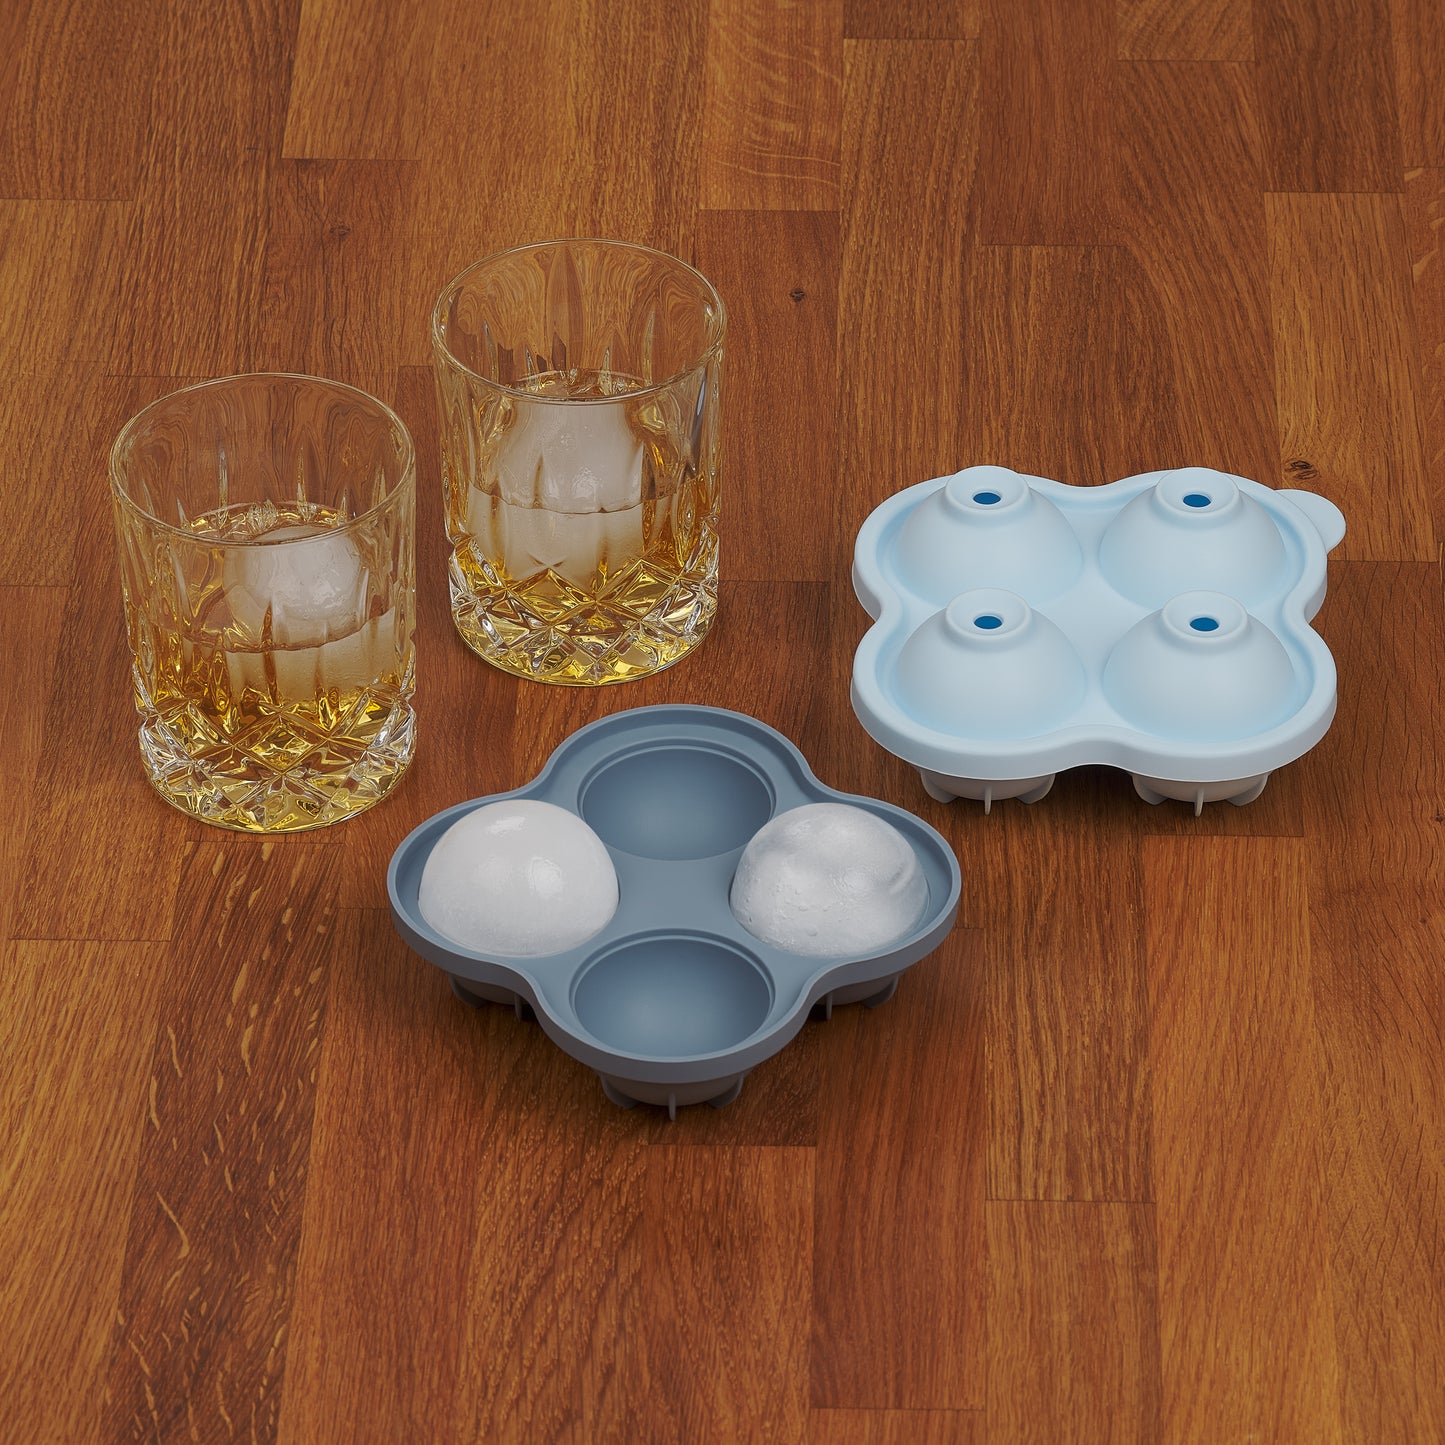 Zwei Whiskygläser mit Eiskugeln neben einer leeren und einer vollen blauen Eiskugelform auf Holzoberfläche.